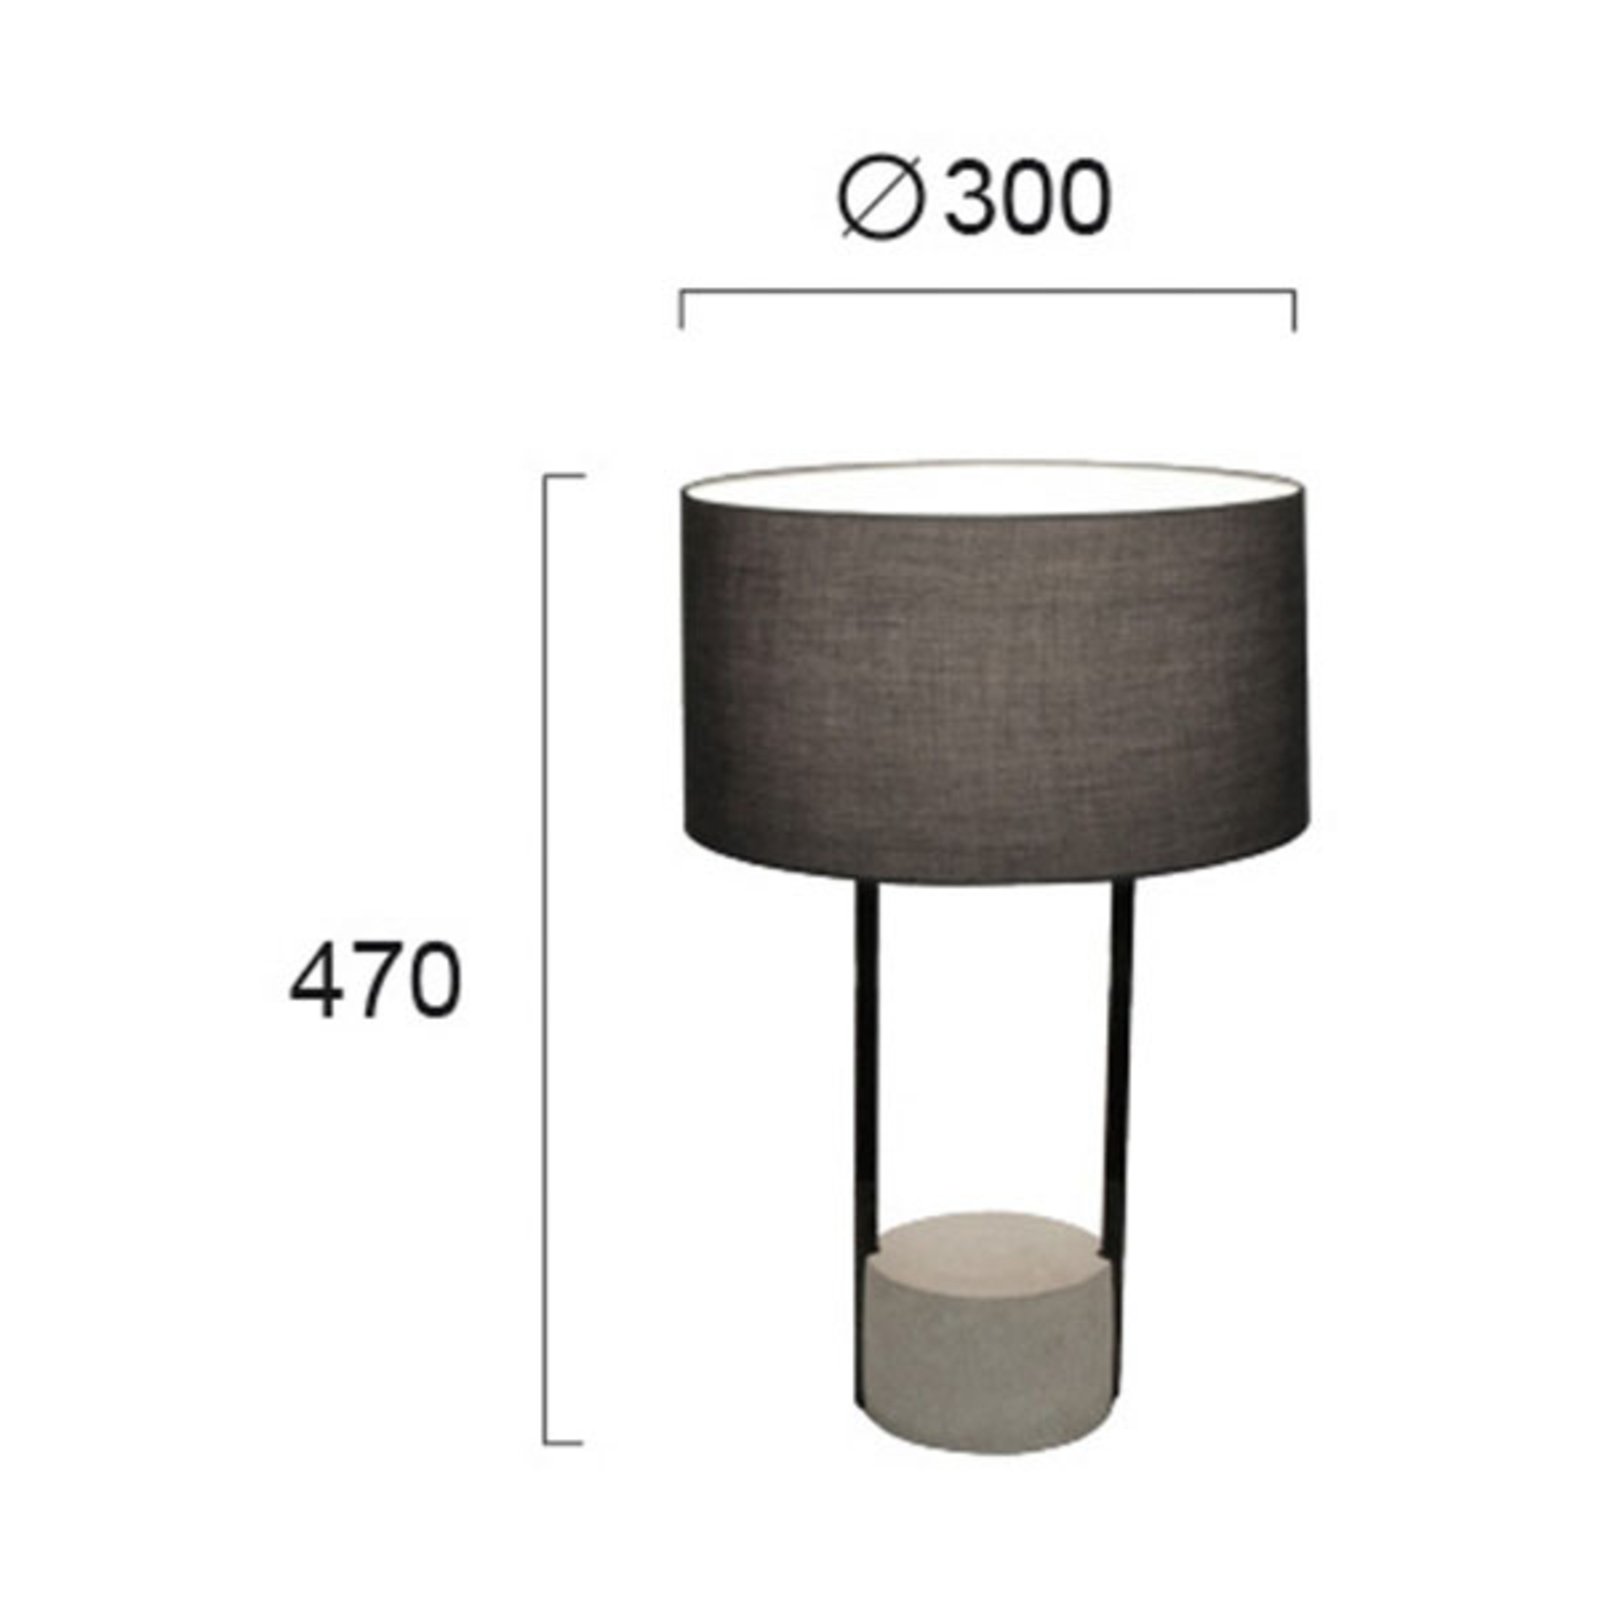 Asztali lámpa Allegro textil ernyővel, szürke